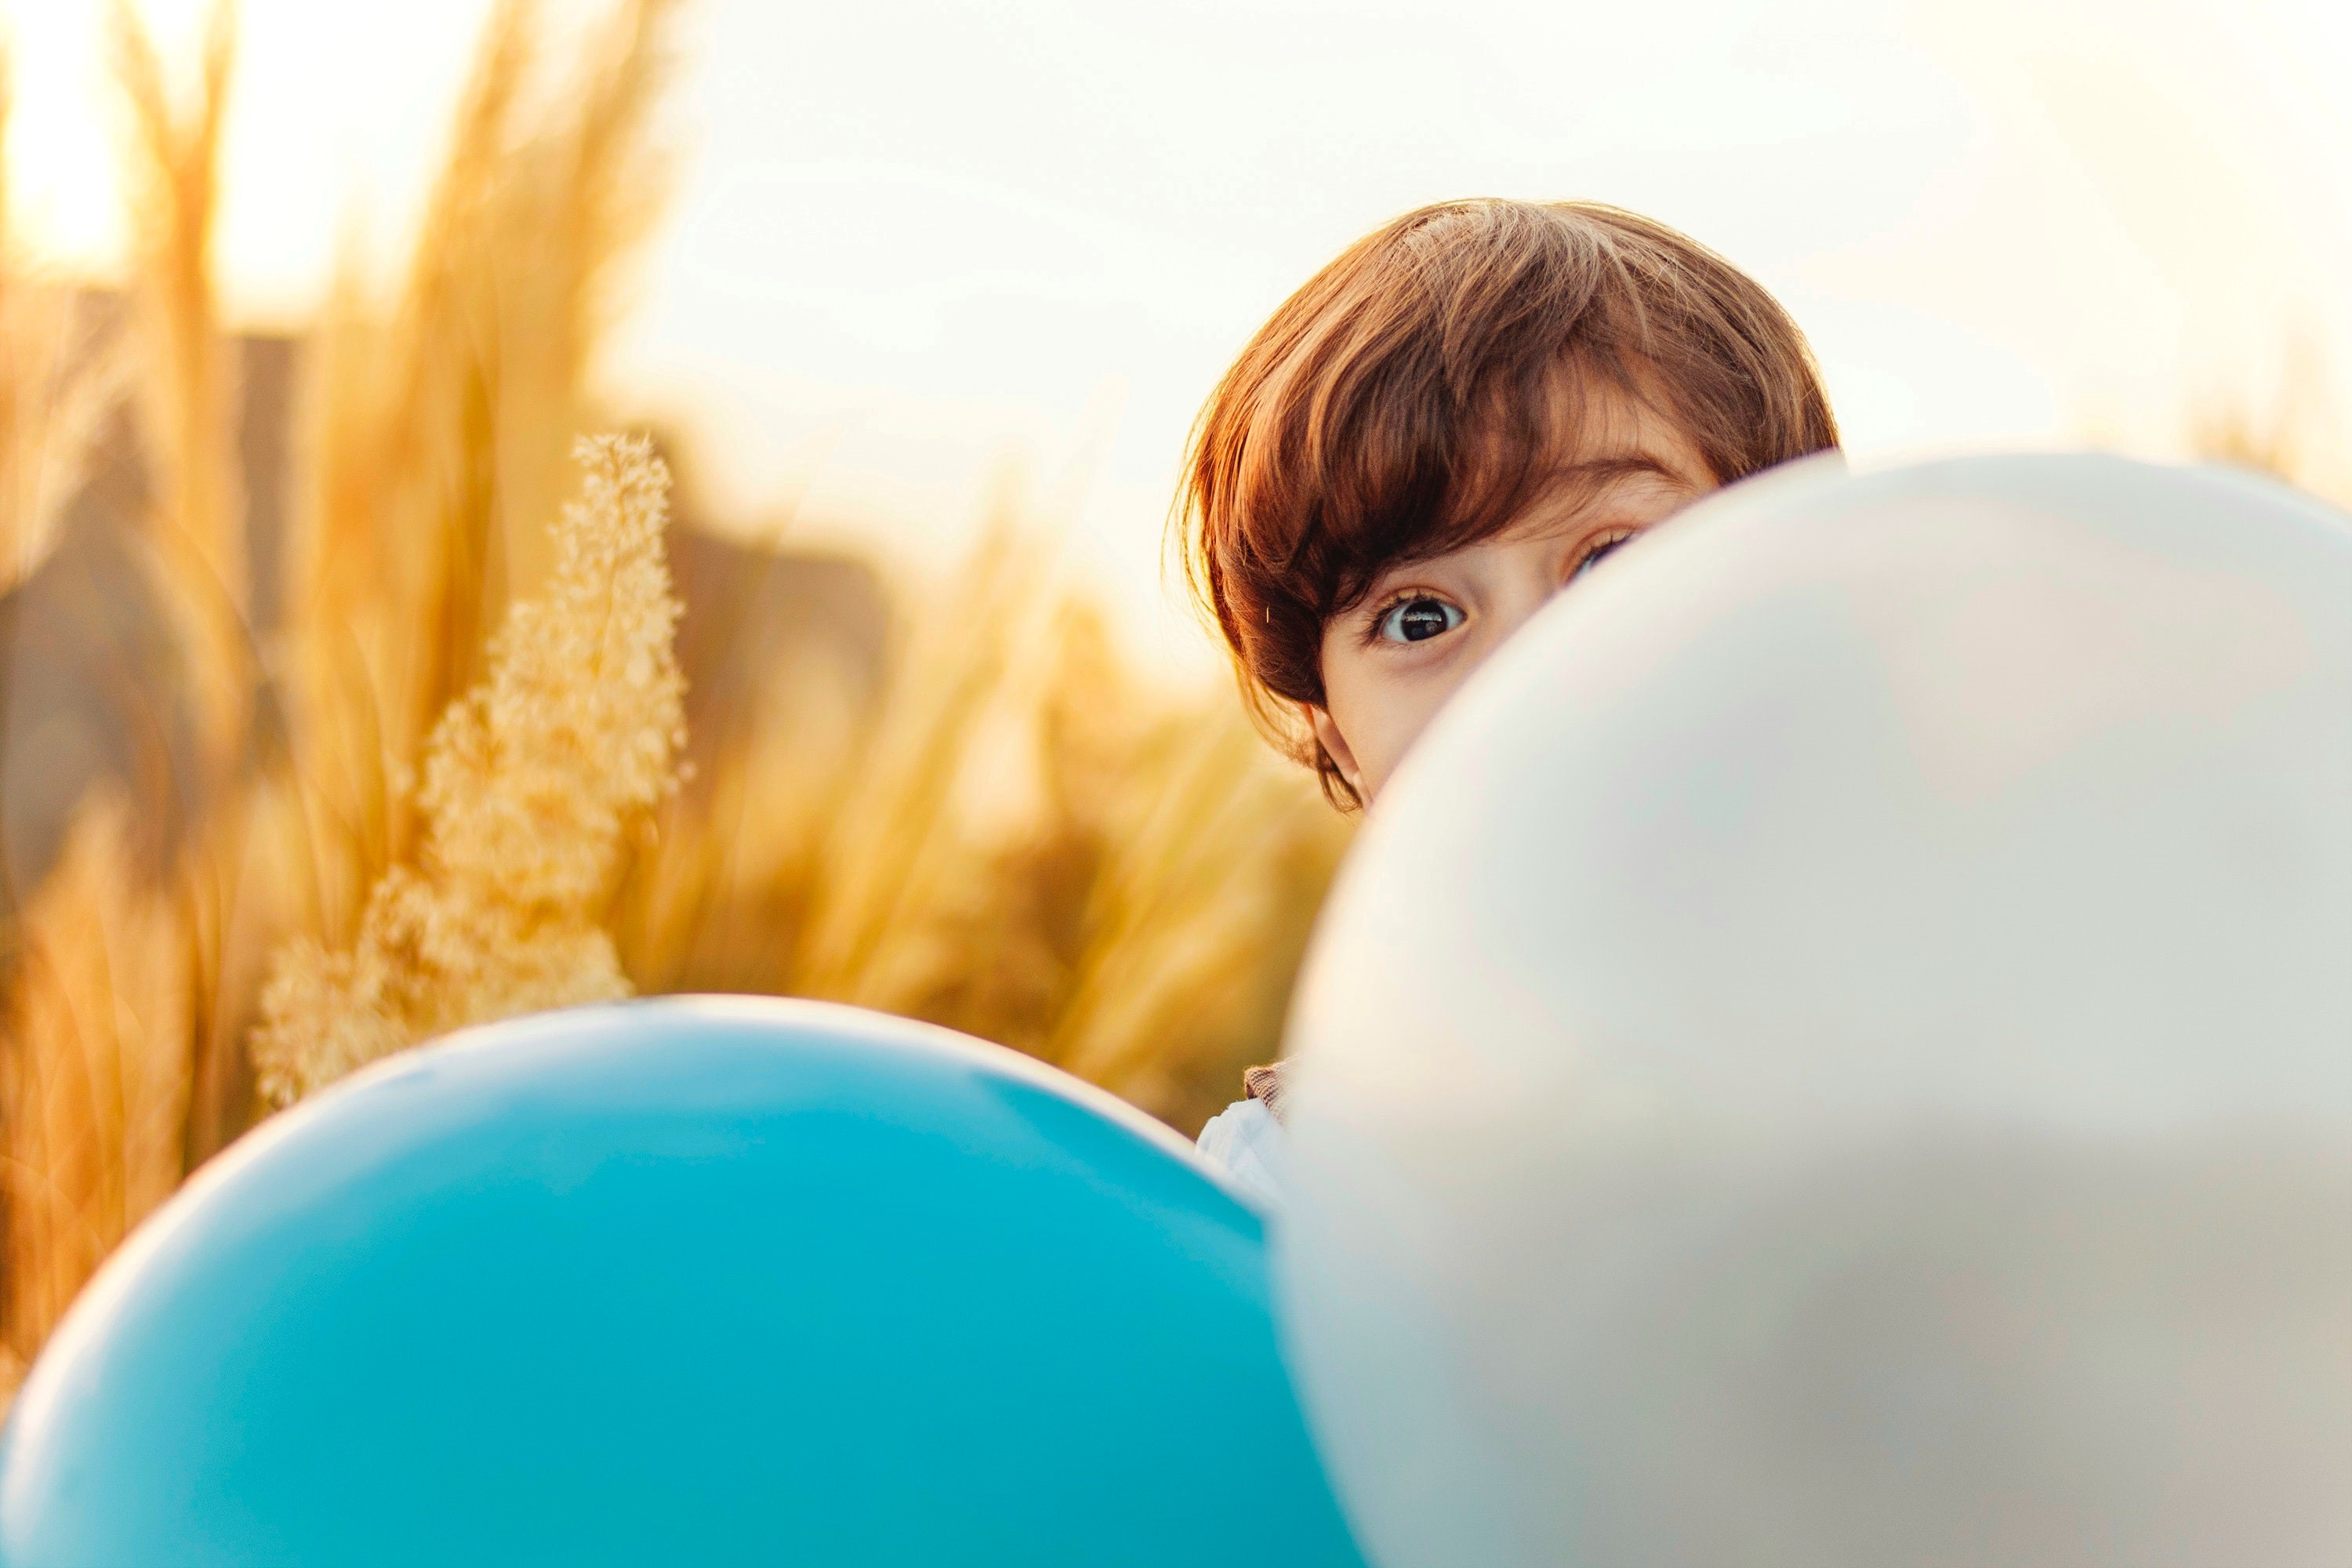 Opgewekte jongen in korenveld half verstopt achter een grote ballon